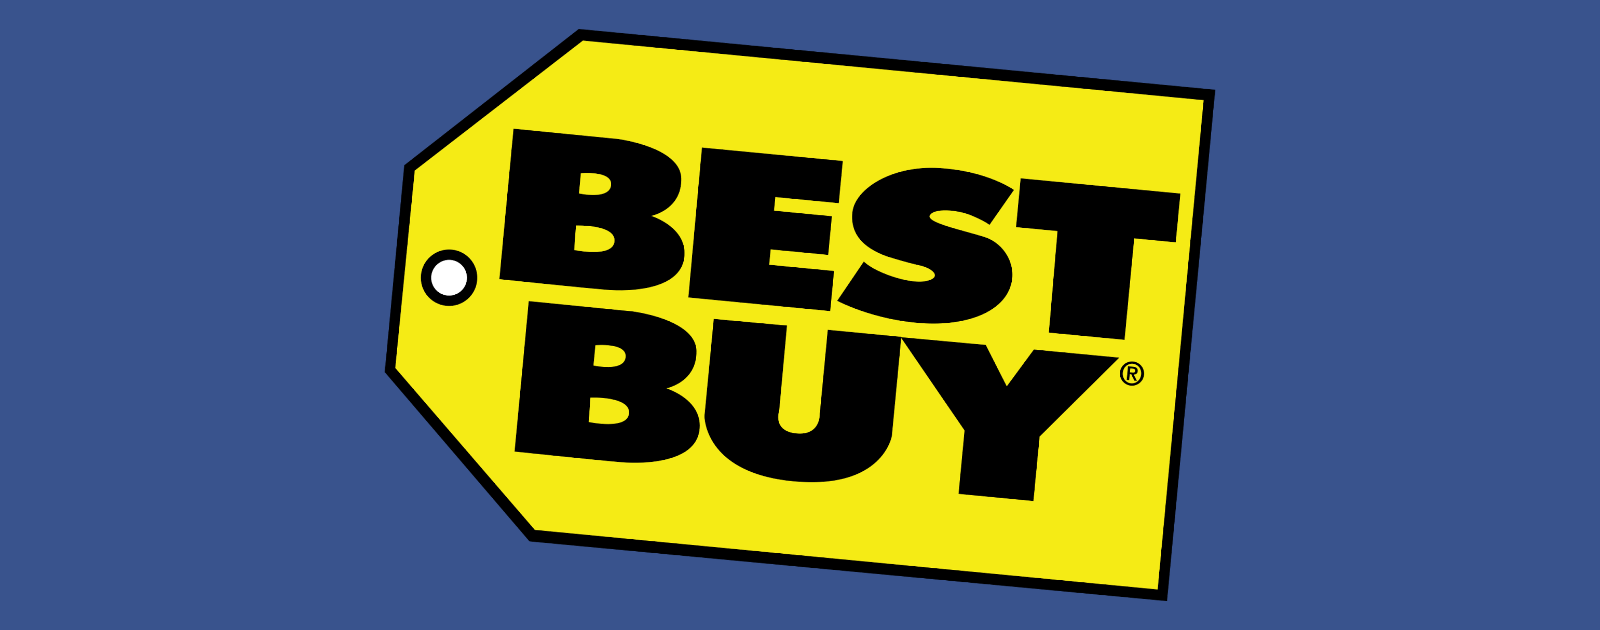 Best Buy tiene una oferta de Apple Watch 3, reduciendo los precios hasta $ 109